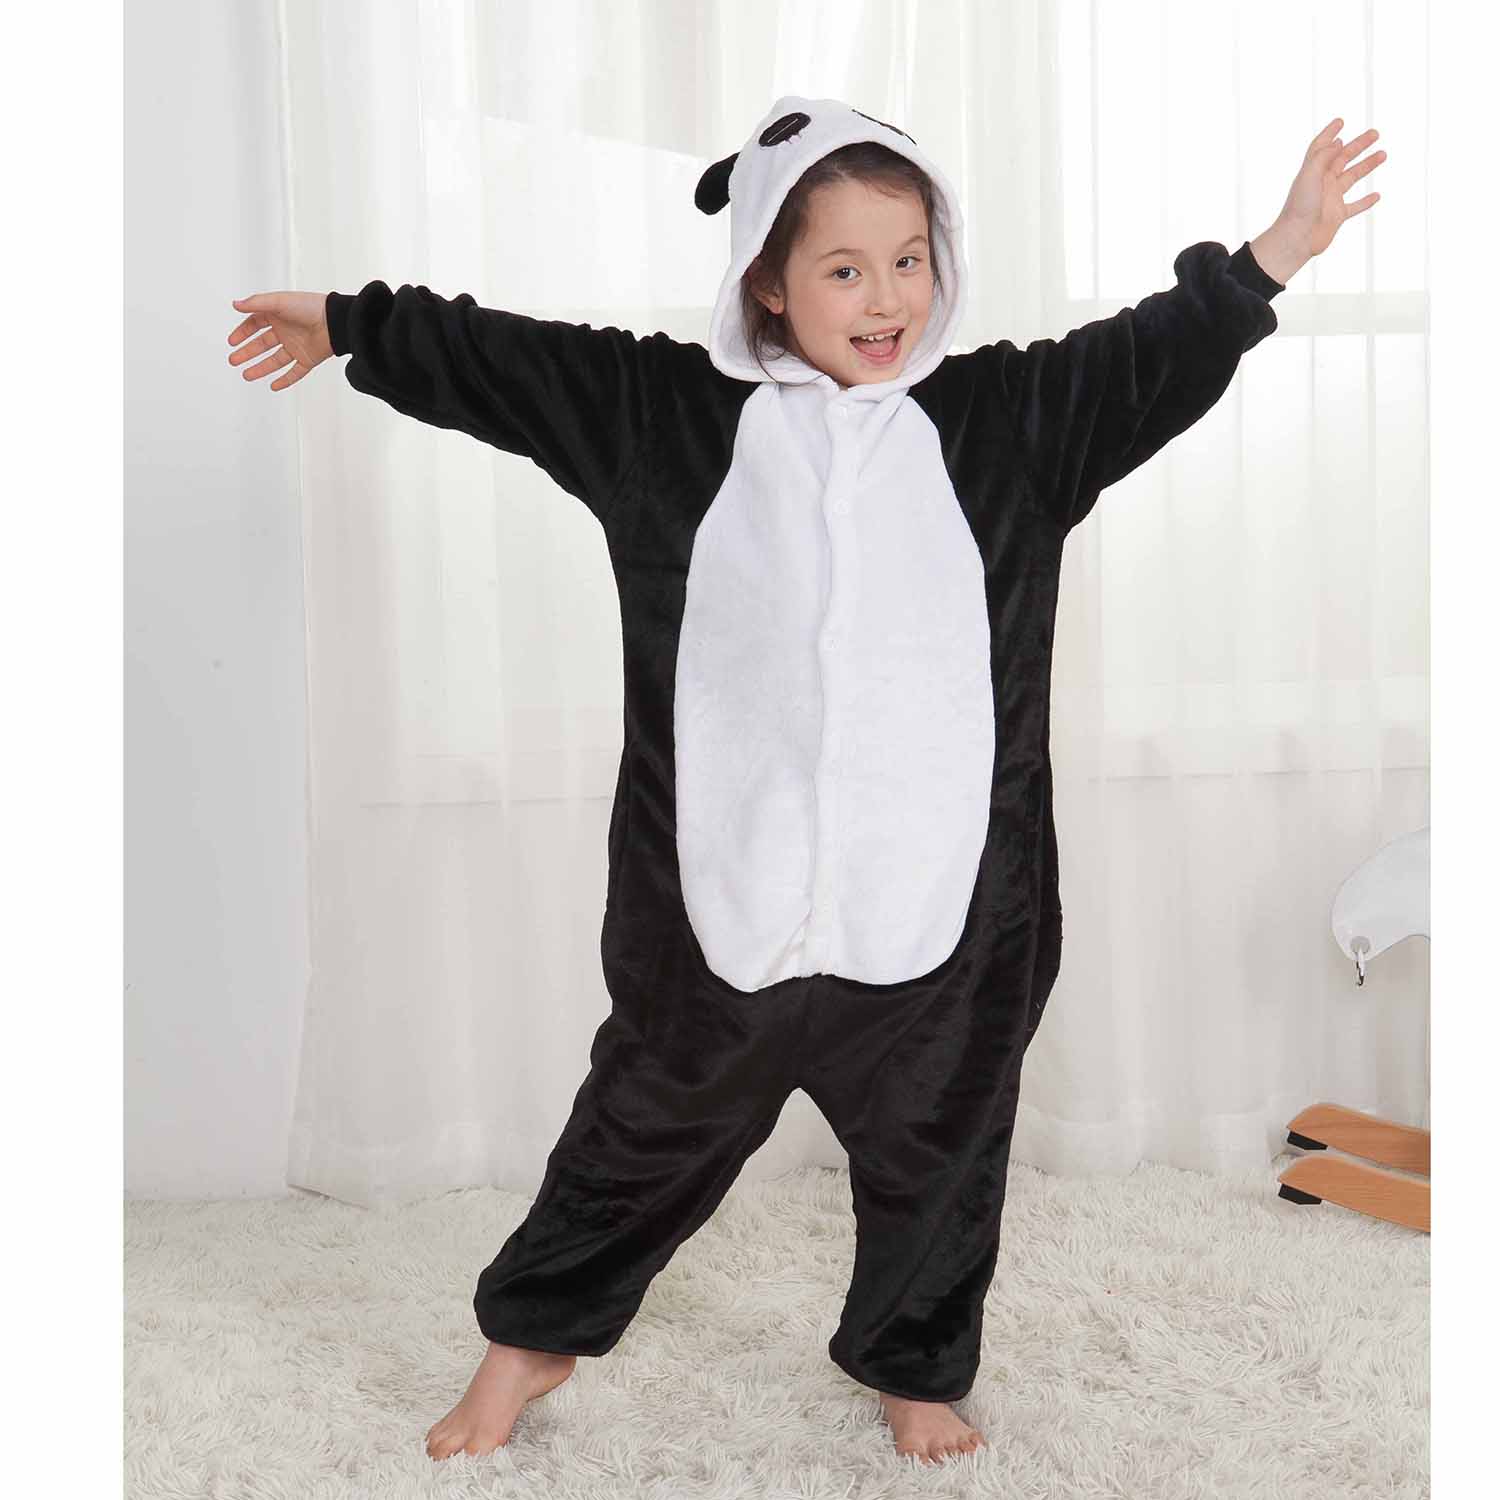 Kids Cow Onesie Animal Pajamas Kigurumi Costumes for Boys Girls